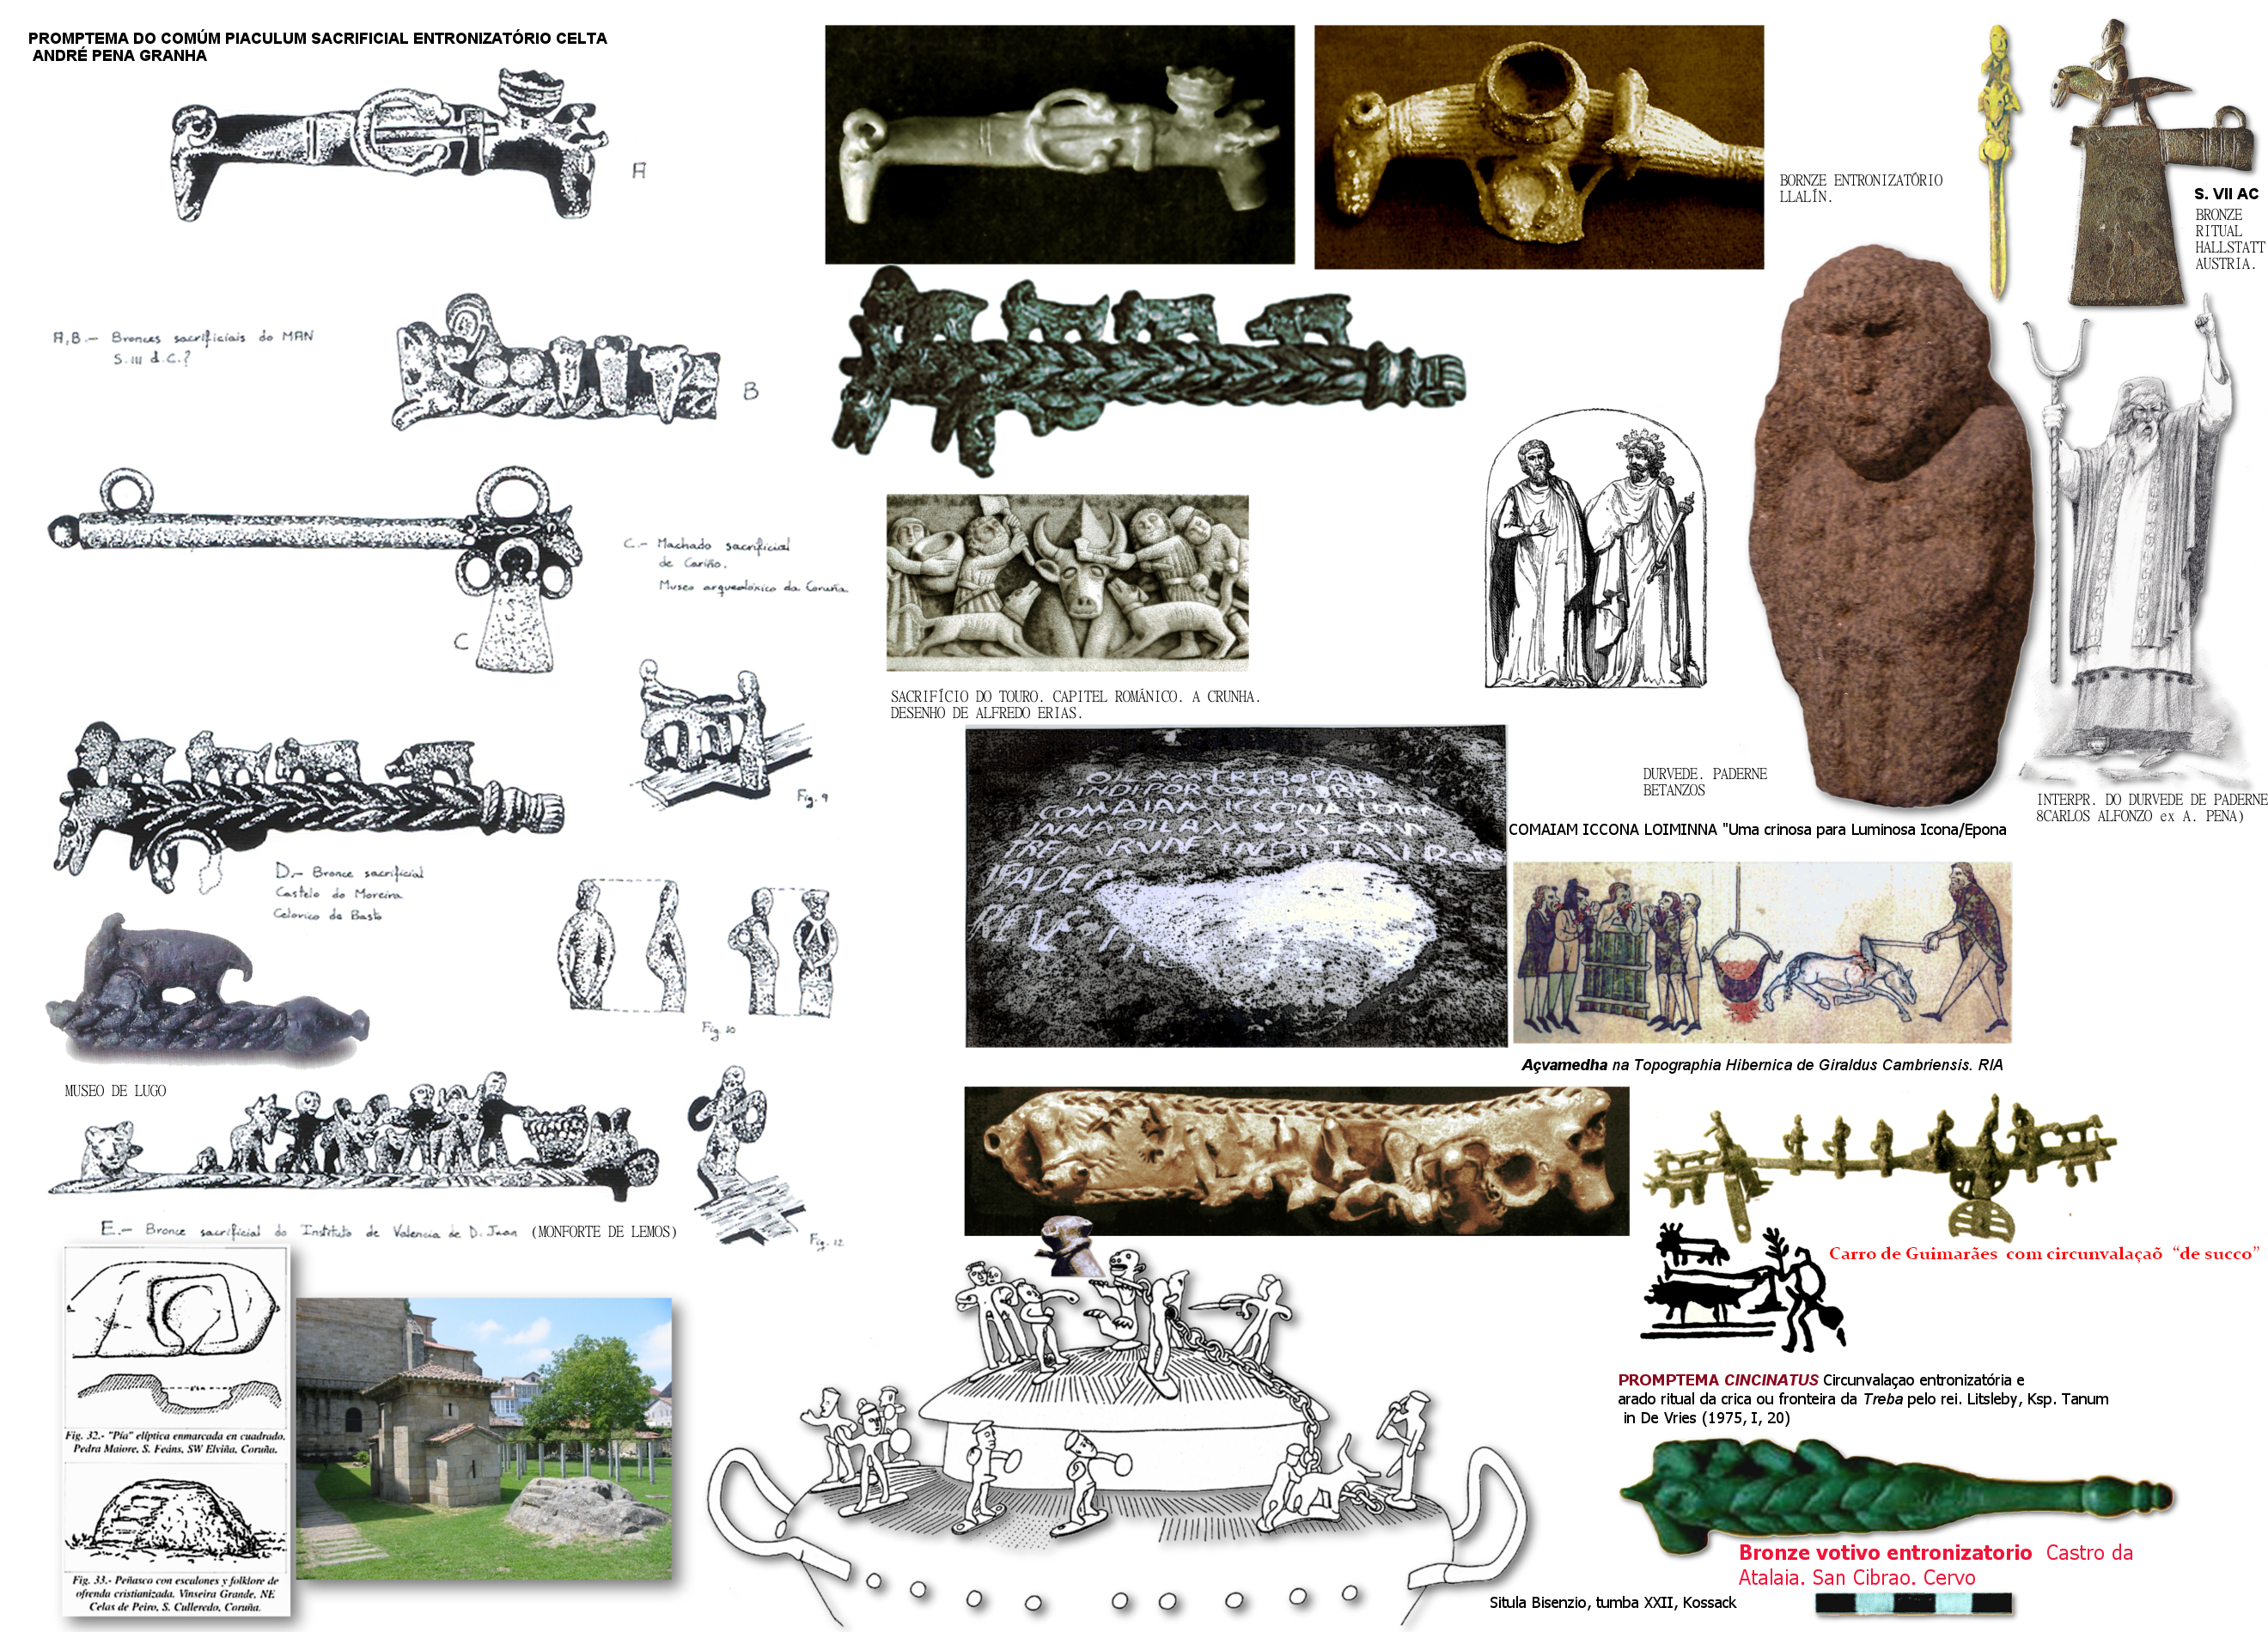 Oito bronces votivos entronizatorios de Gallaecia